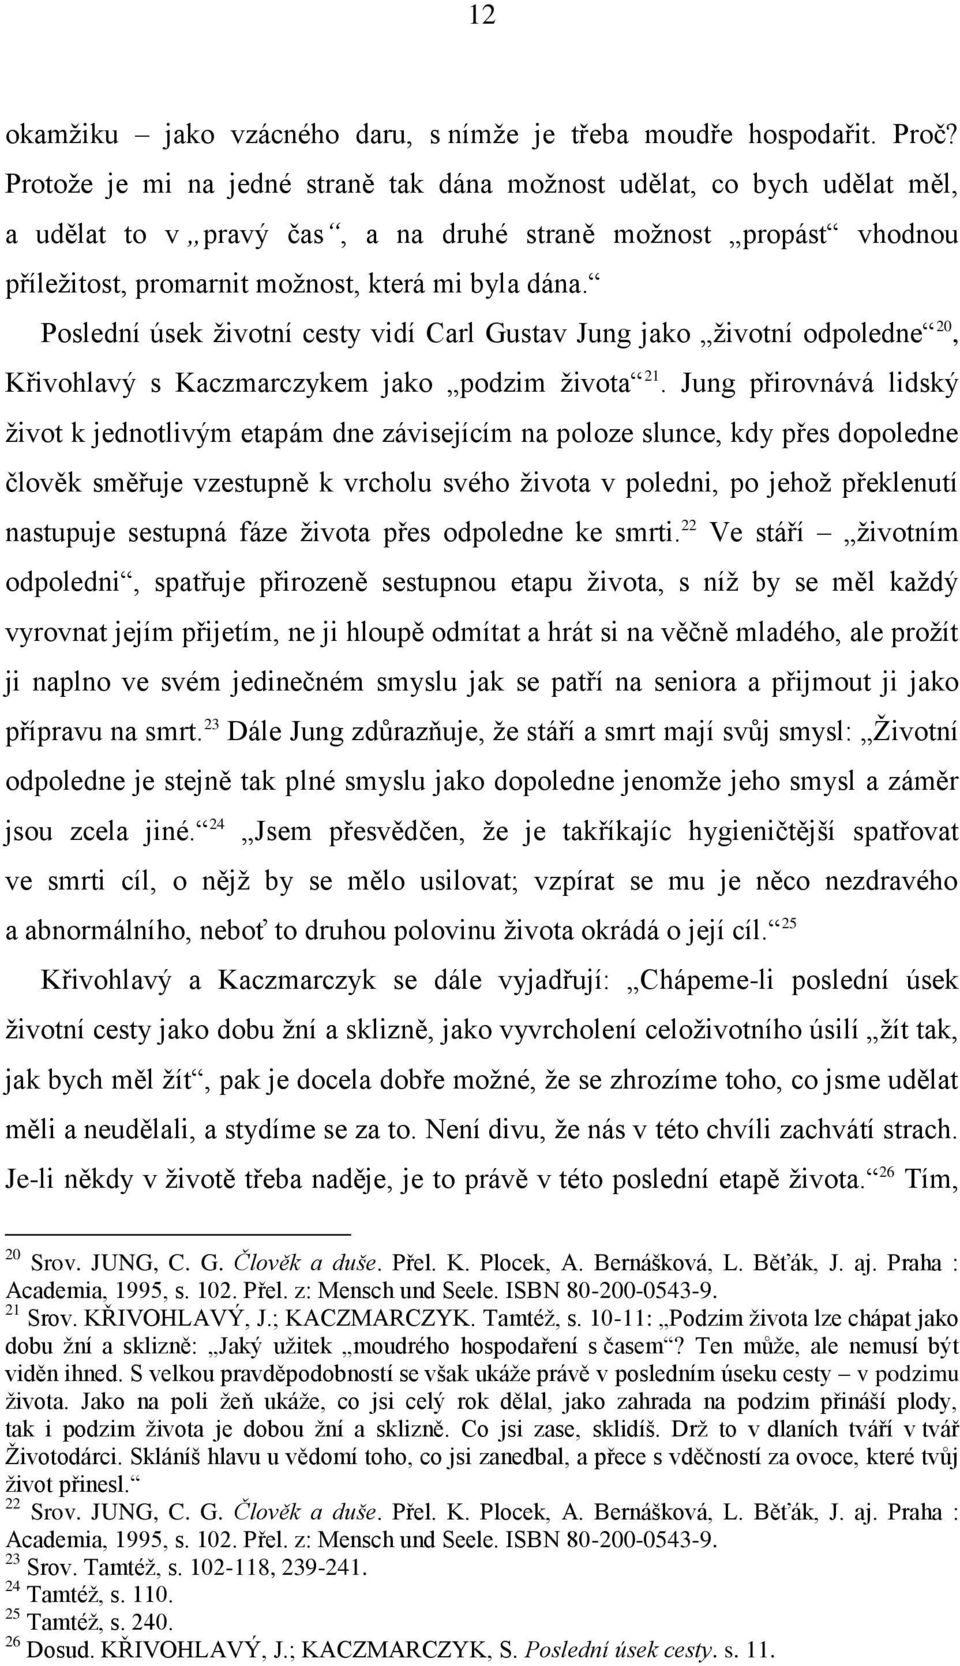 Poslední úsek ņivotní cesty vidí Carl Gustav Jung jako ņivotní odpoledne 20, Křivohlavý s Kaczmarczykem jako podzim ņivota 21.